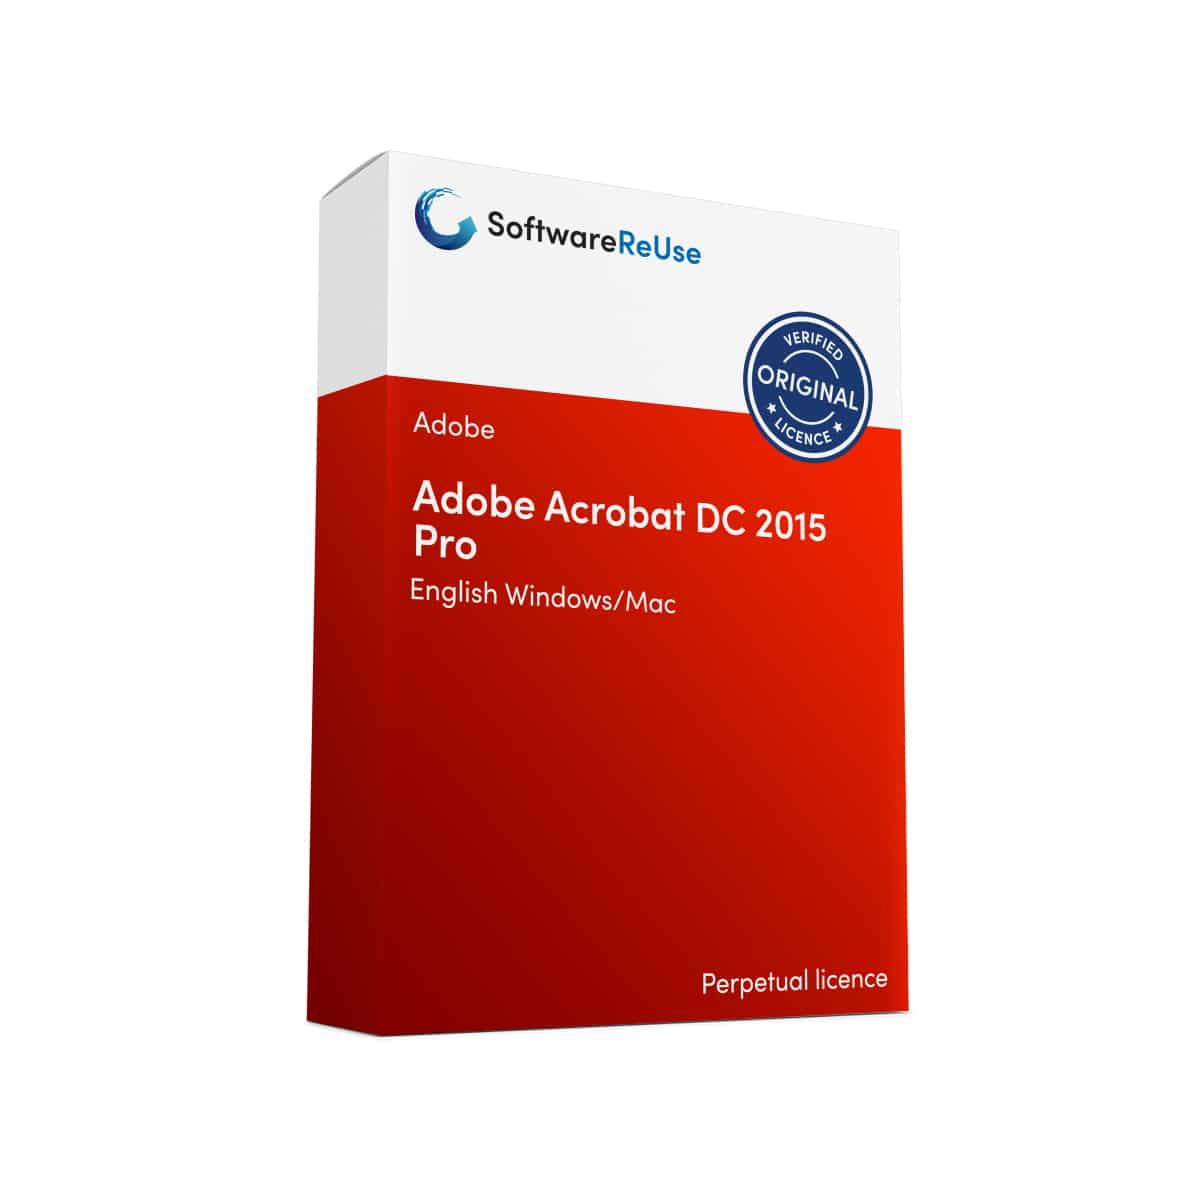 Adobe Acrobat DC 2015 Pro 8